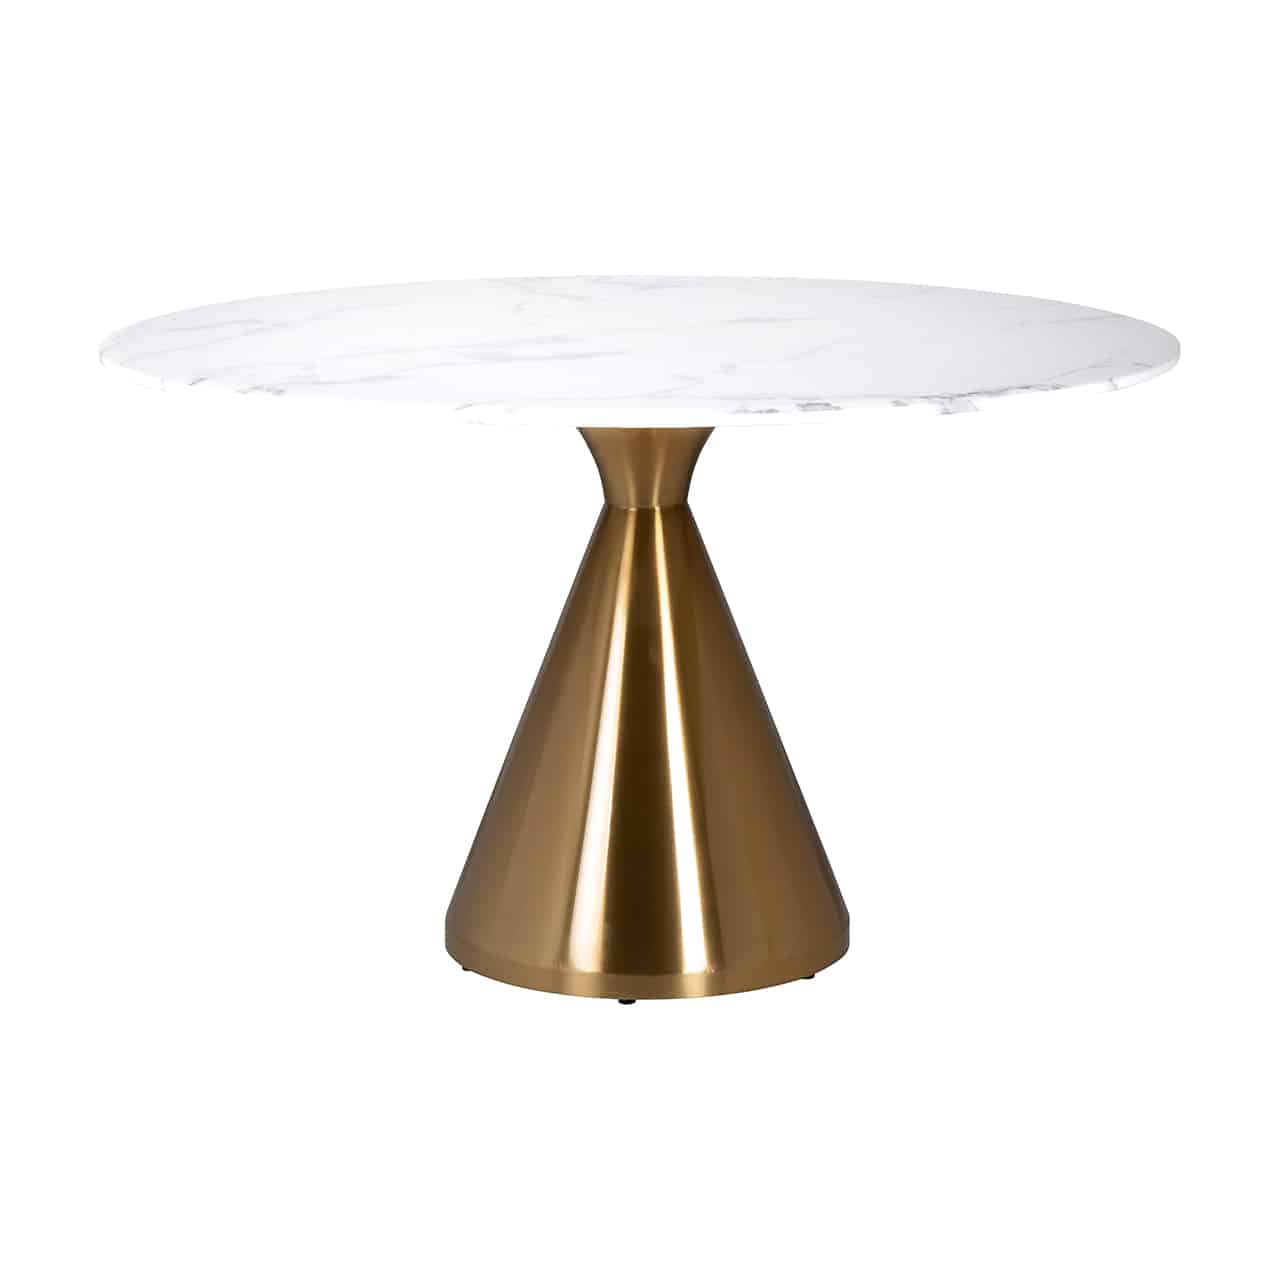 Esstisch mit einem goldenen zylinderförmigen Tischbein mit kurzem, konischen Aufsatz, darauf eine runde, weiße Tischplatte.